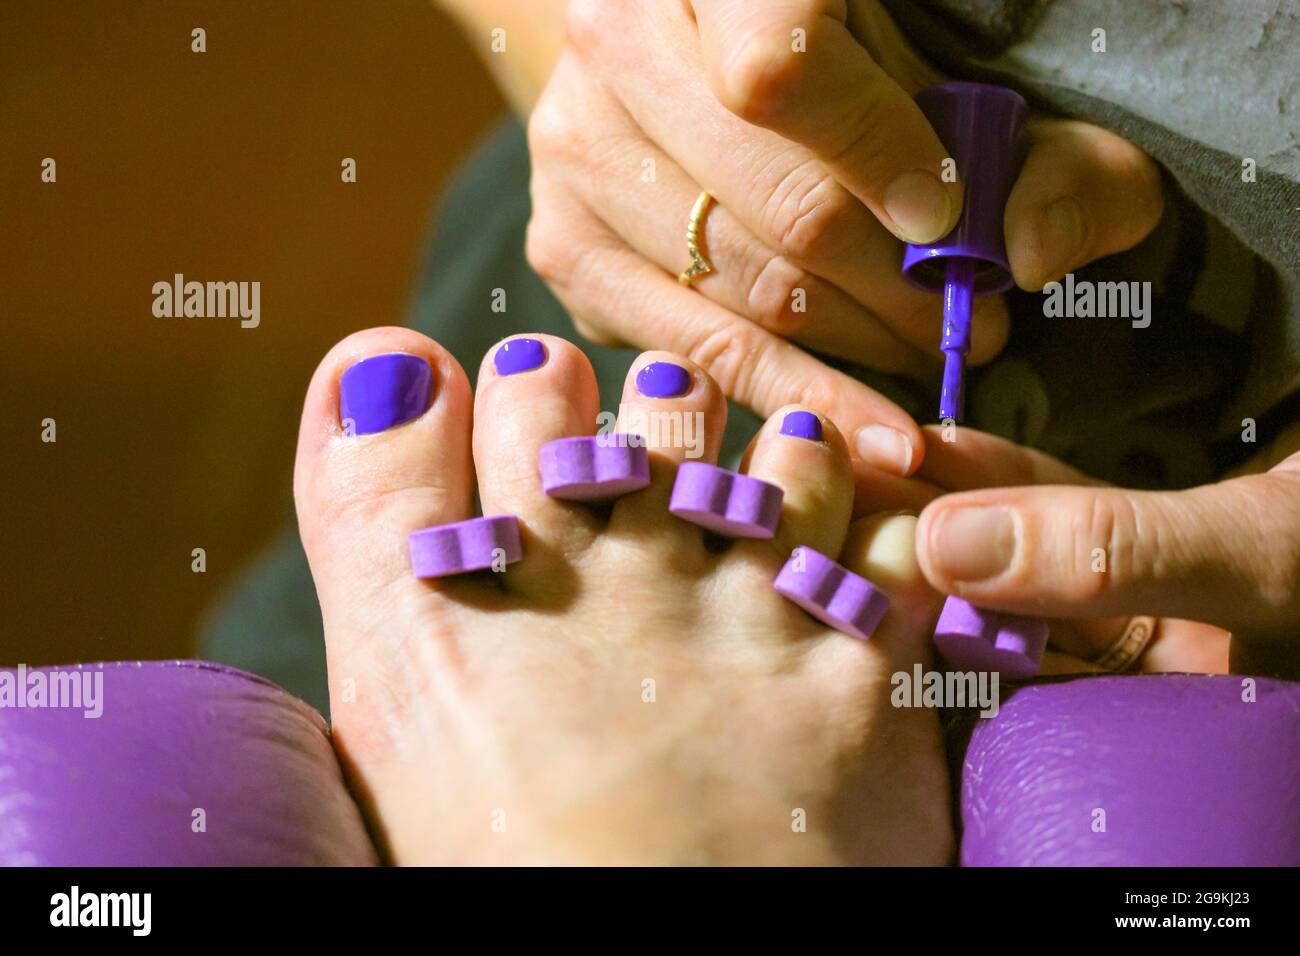 Colonos Almuerzo trapo El maestro de pedicura aplica esmalte de uñas púrpura brillante a las uñas  del cliente en el salón de belleza. Dedos de la mujer, divisor de dedo de  cerca. Accesorios para pedicura.